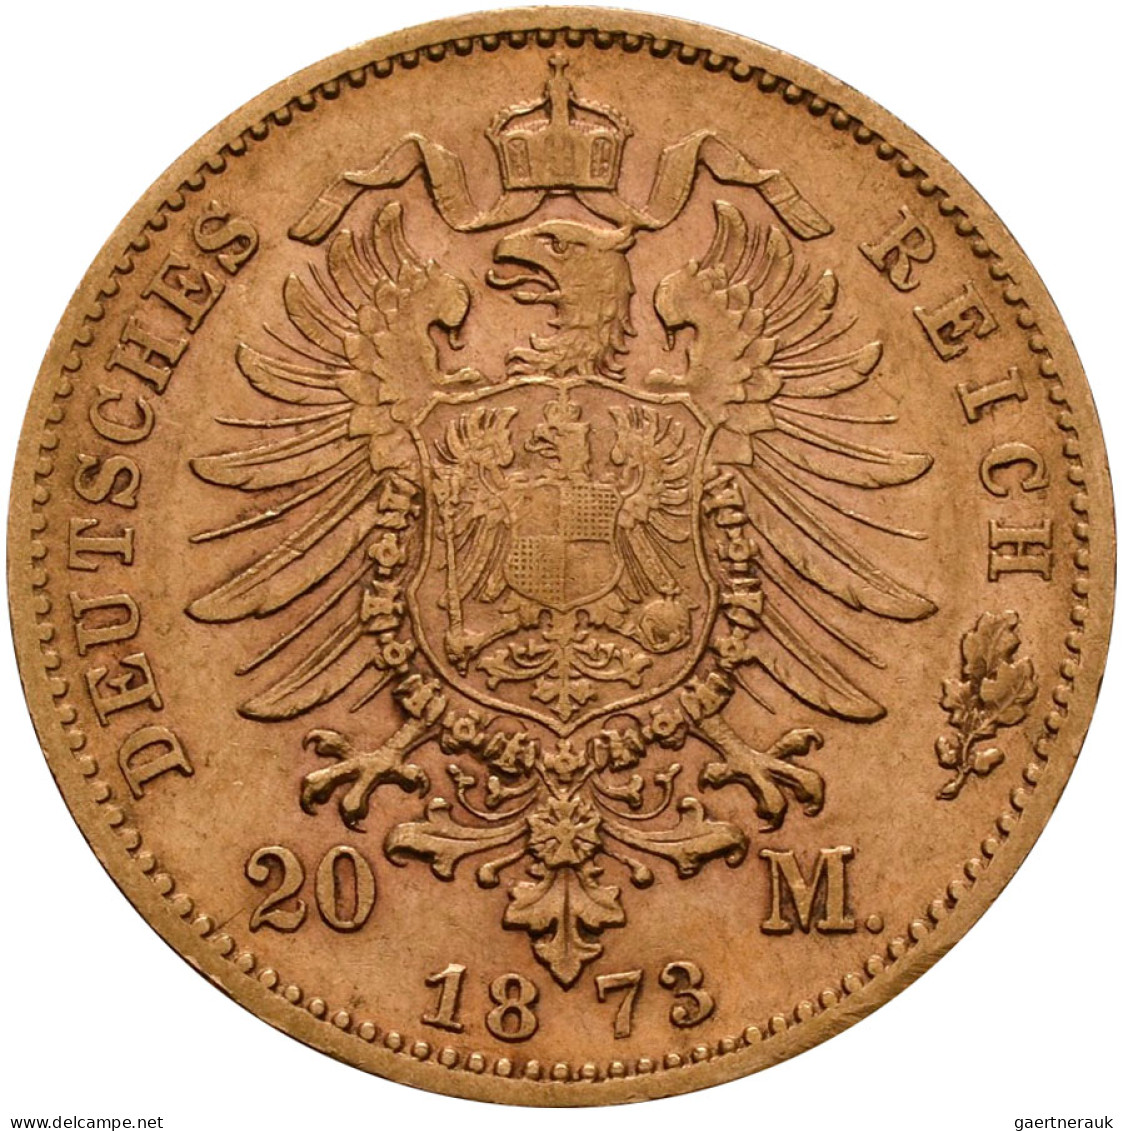 Württemberg - Anlagegold: Karl 1864-1891: 20 Mark 1873 F, Jaeger 290. 7,92 G, 90 - 5, 10 & 20 Mark Gold